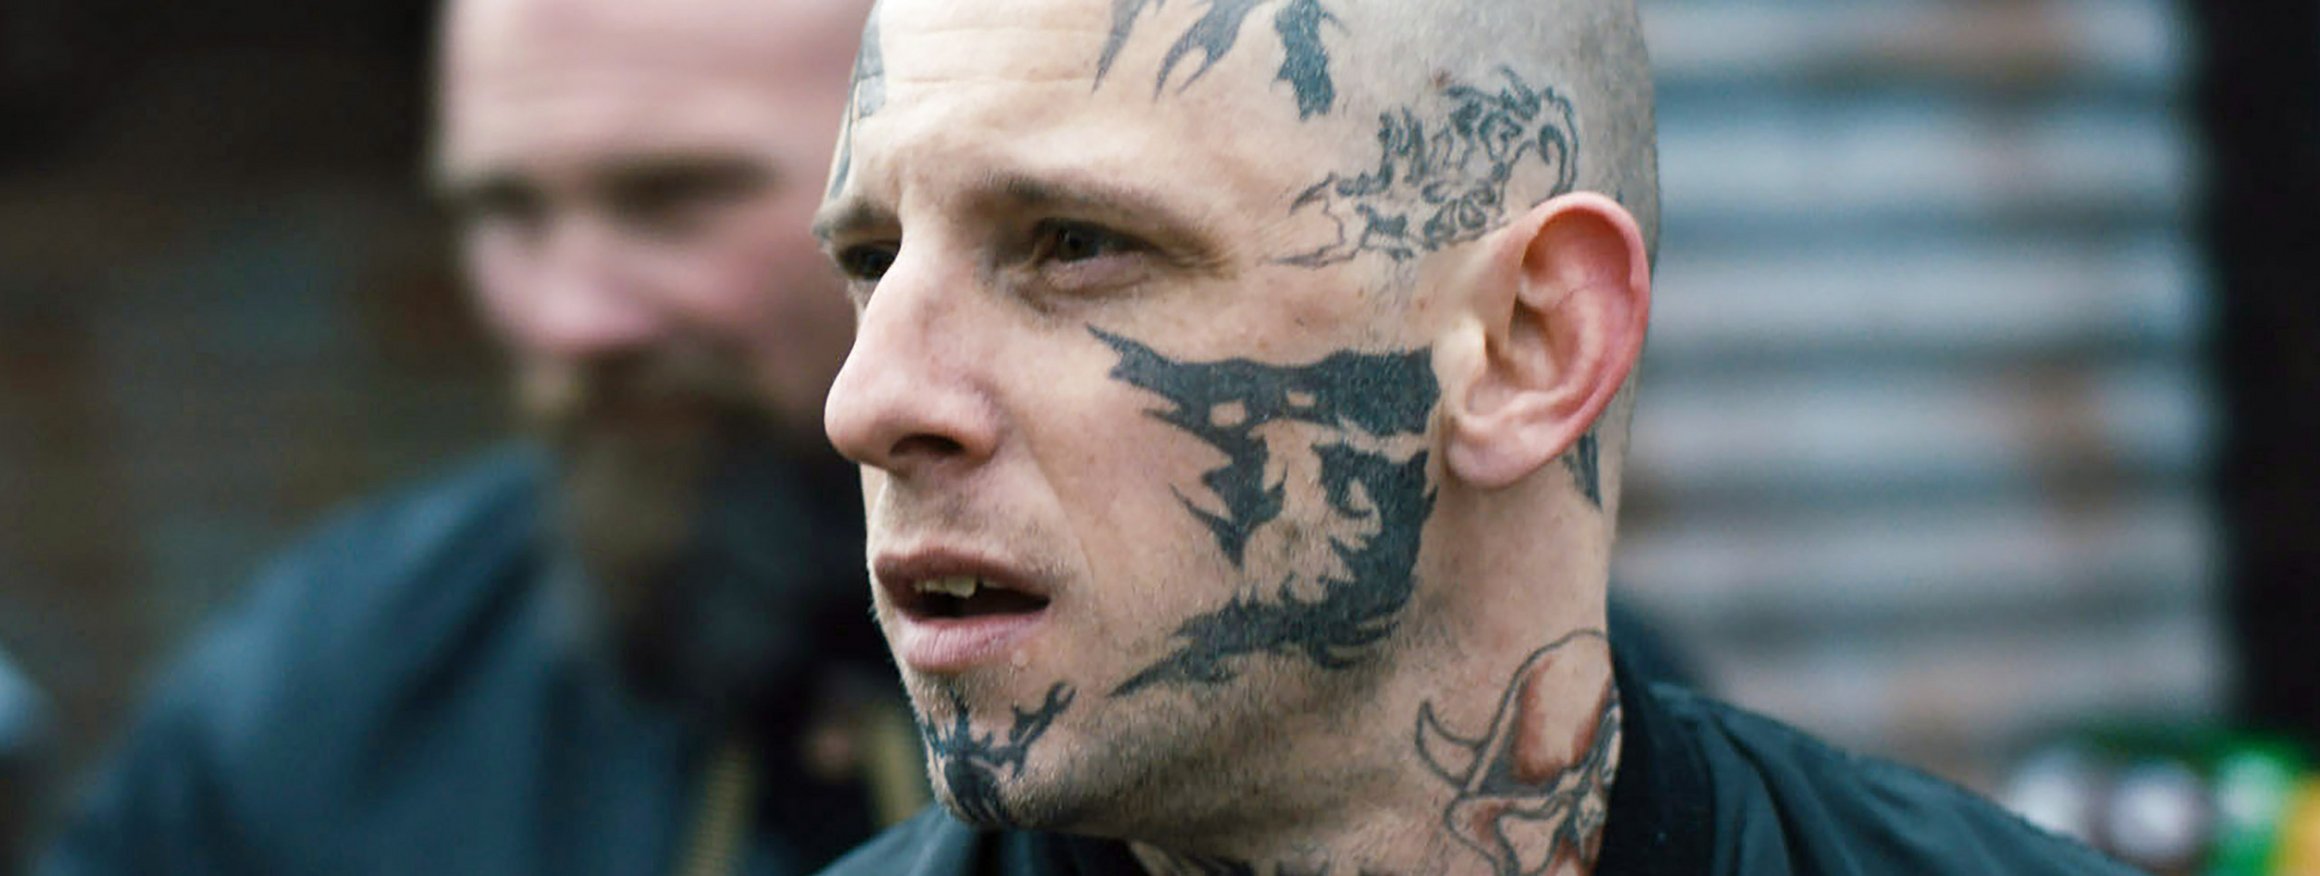 Ein Skinhead mit Tattoos im Gesicht schaut aggressiv